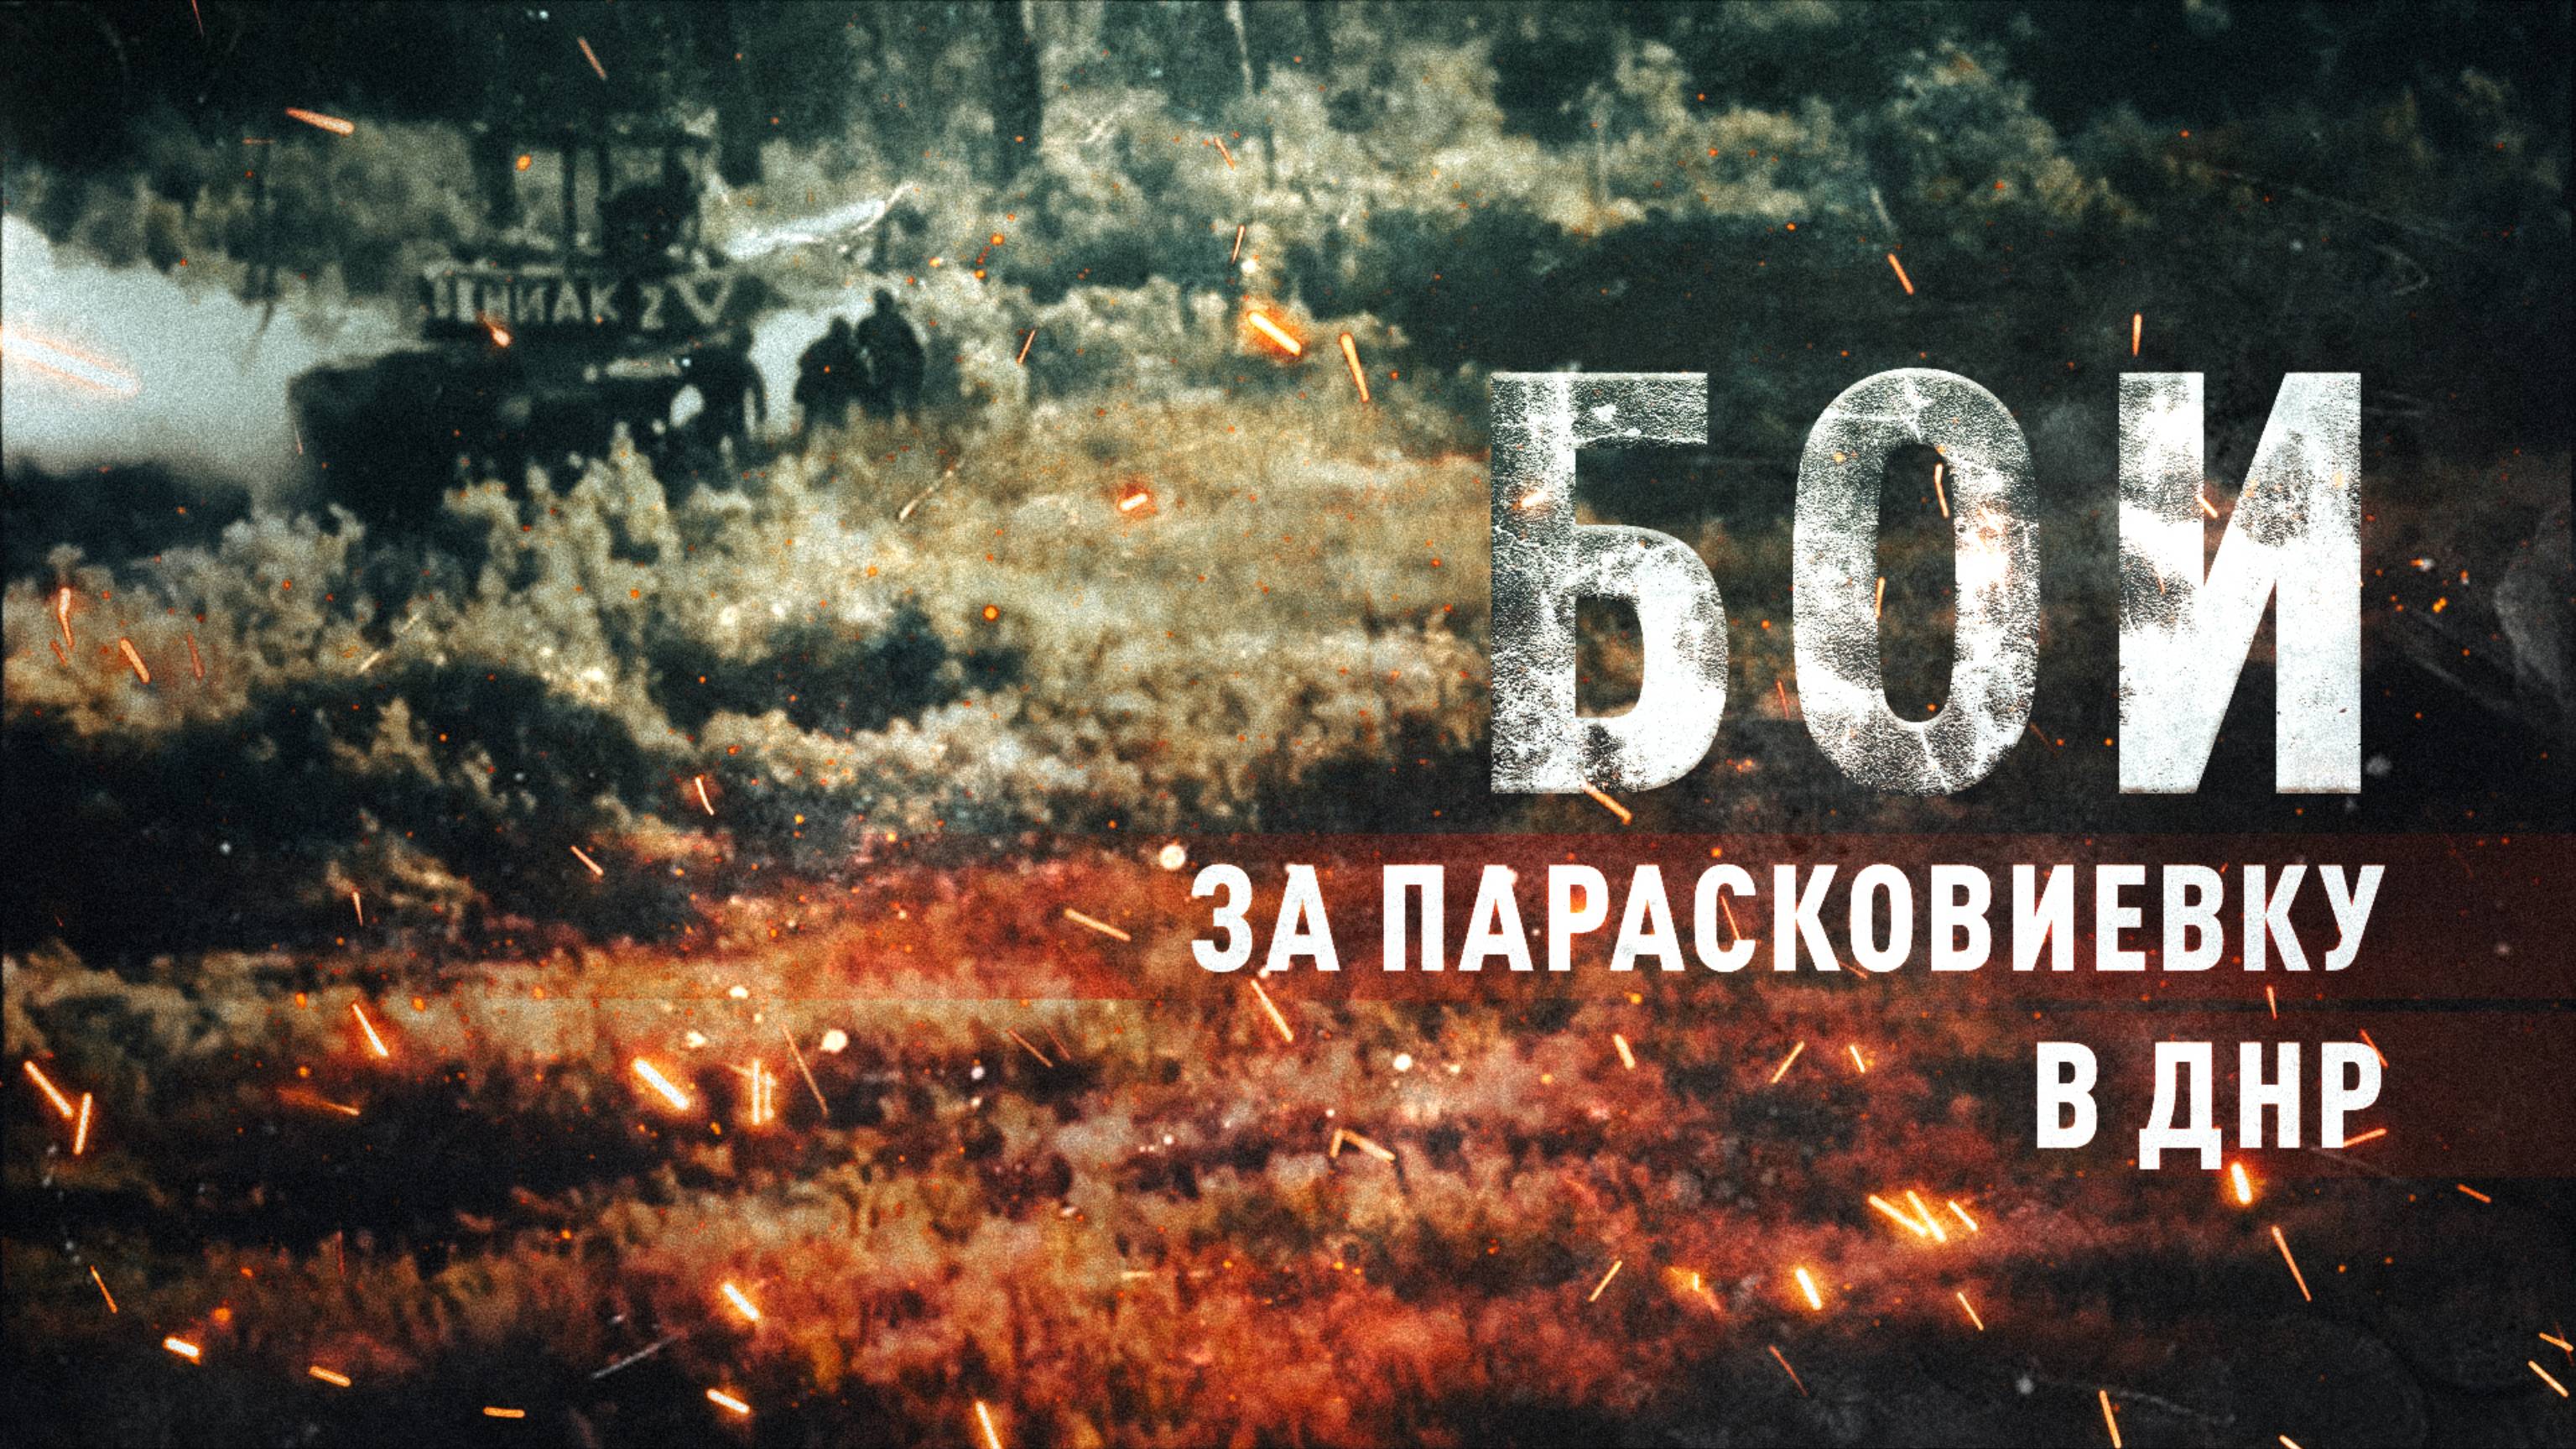 «Мы шли за танком по минным полям»: как штурмовики 33-го полка бились за Парасковиевку в ДНР